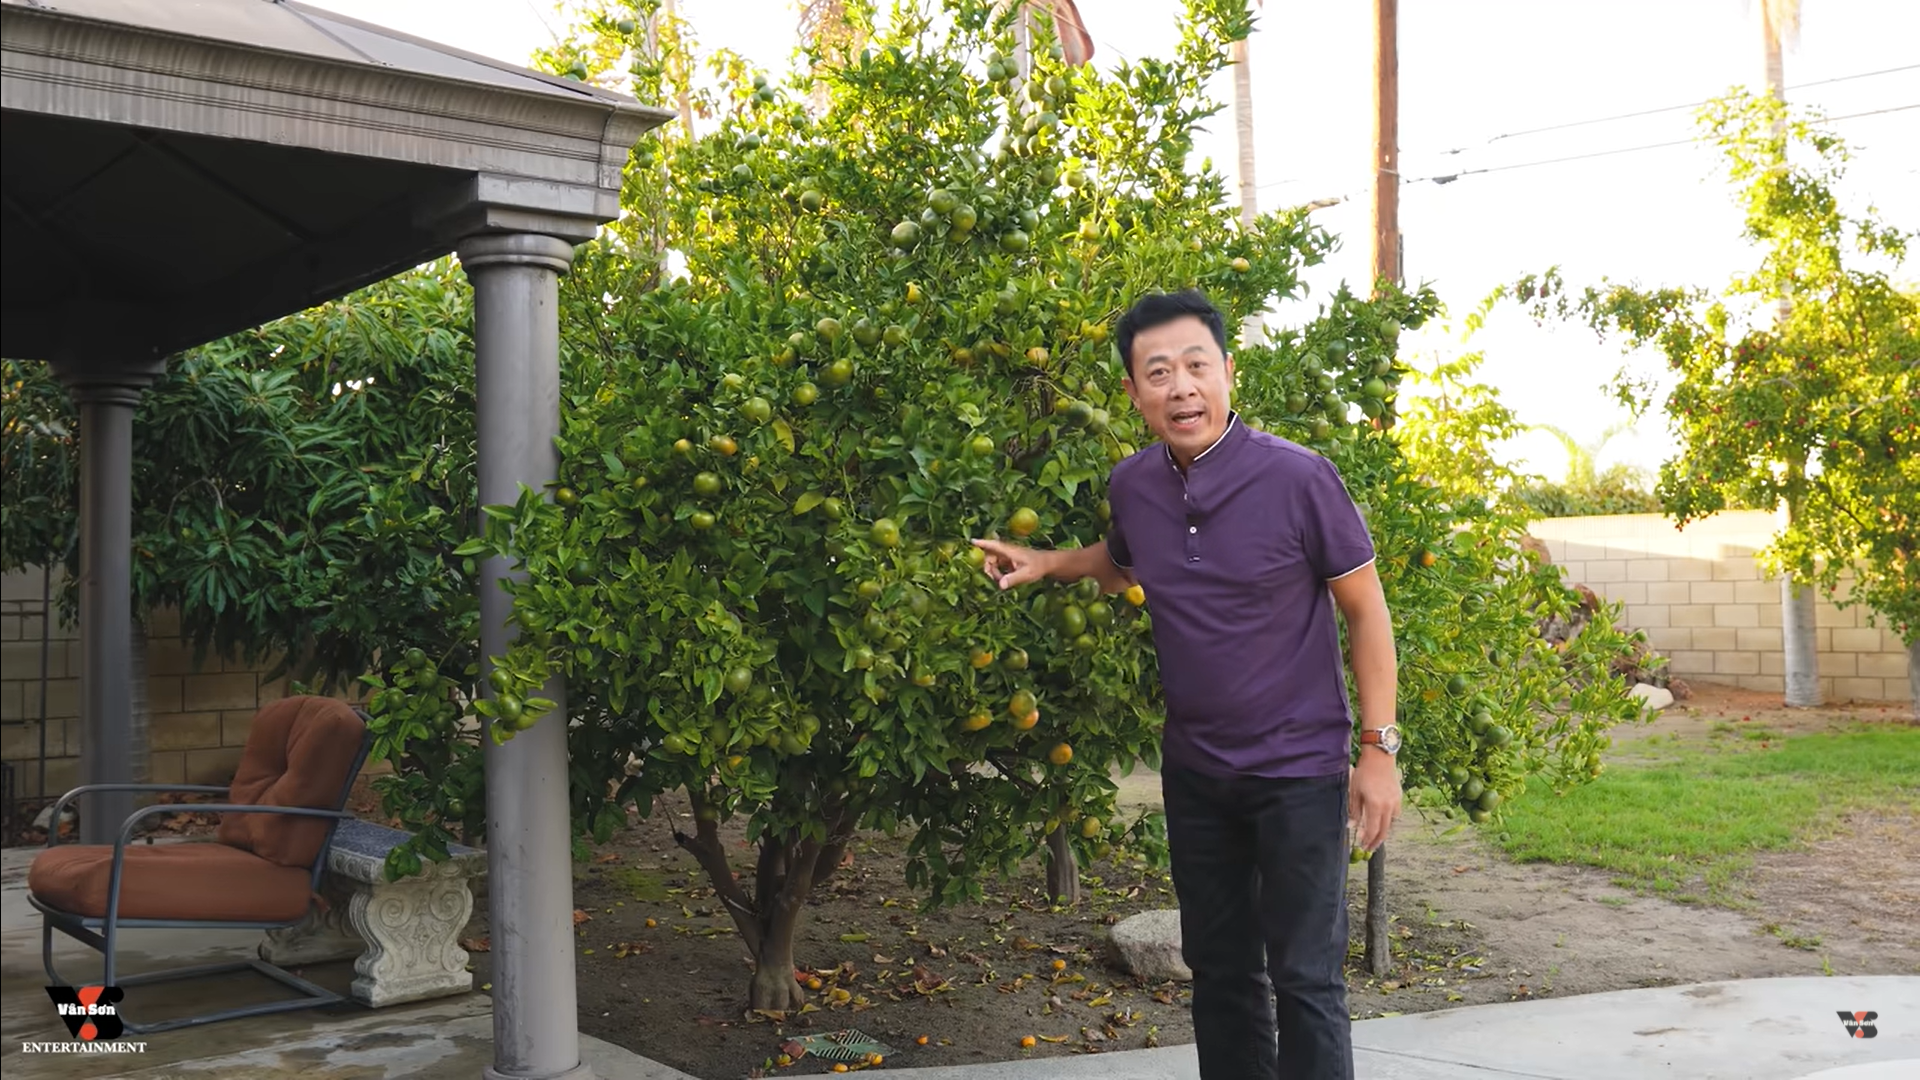 Danh hài Vân Sơn khoe vườn cây hàng trăm mét vuông, trĩu quả trong biệt thự tại Mỹ - Ảnh 3.